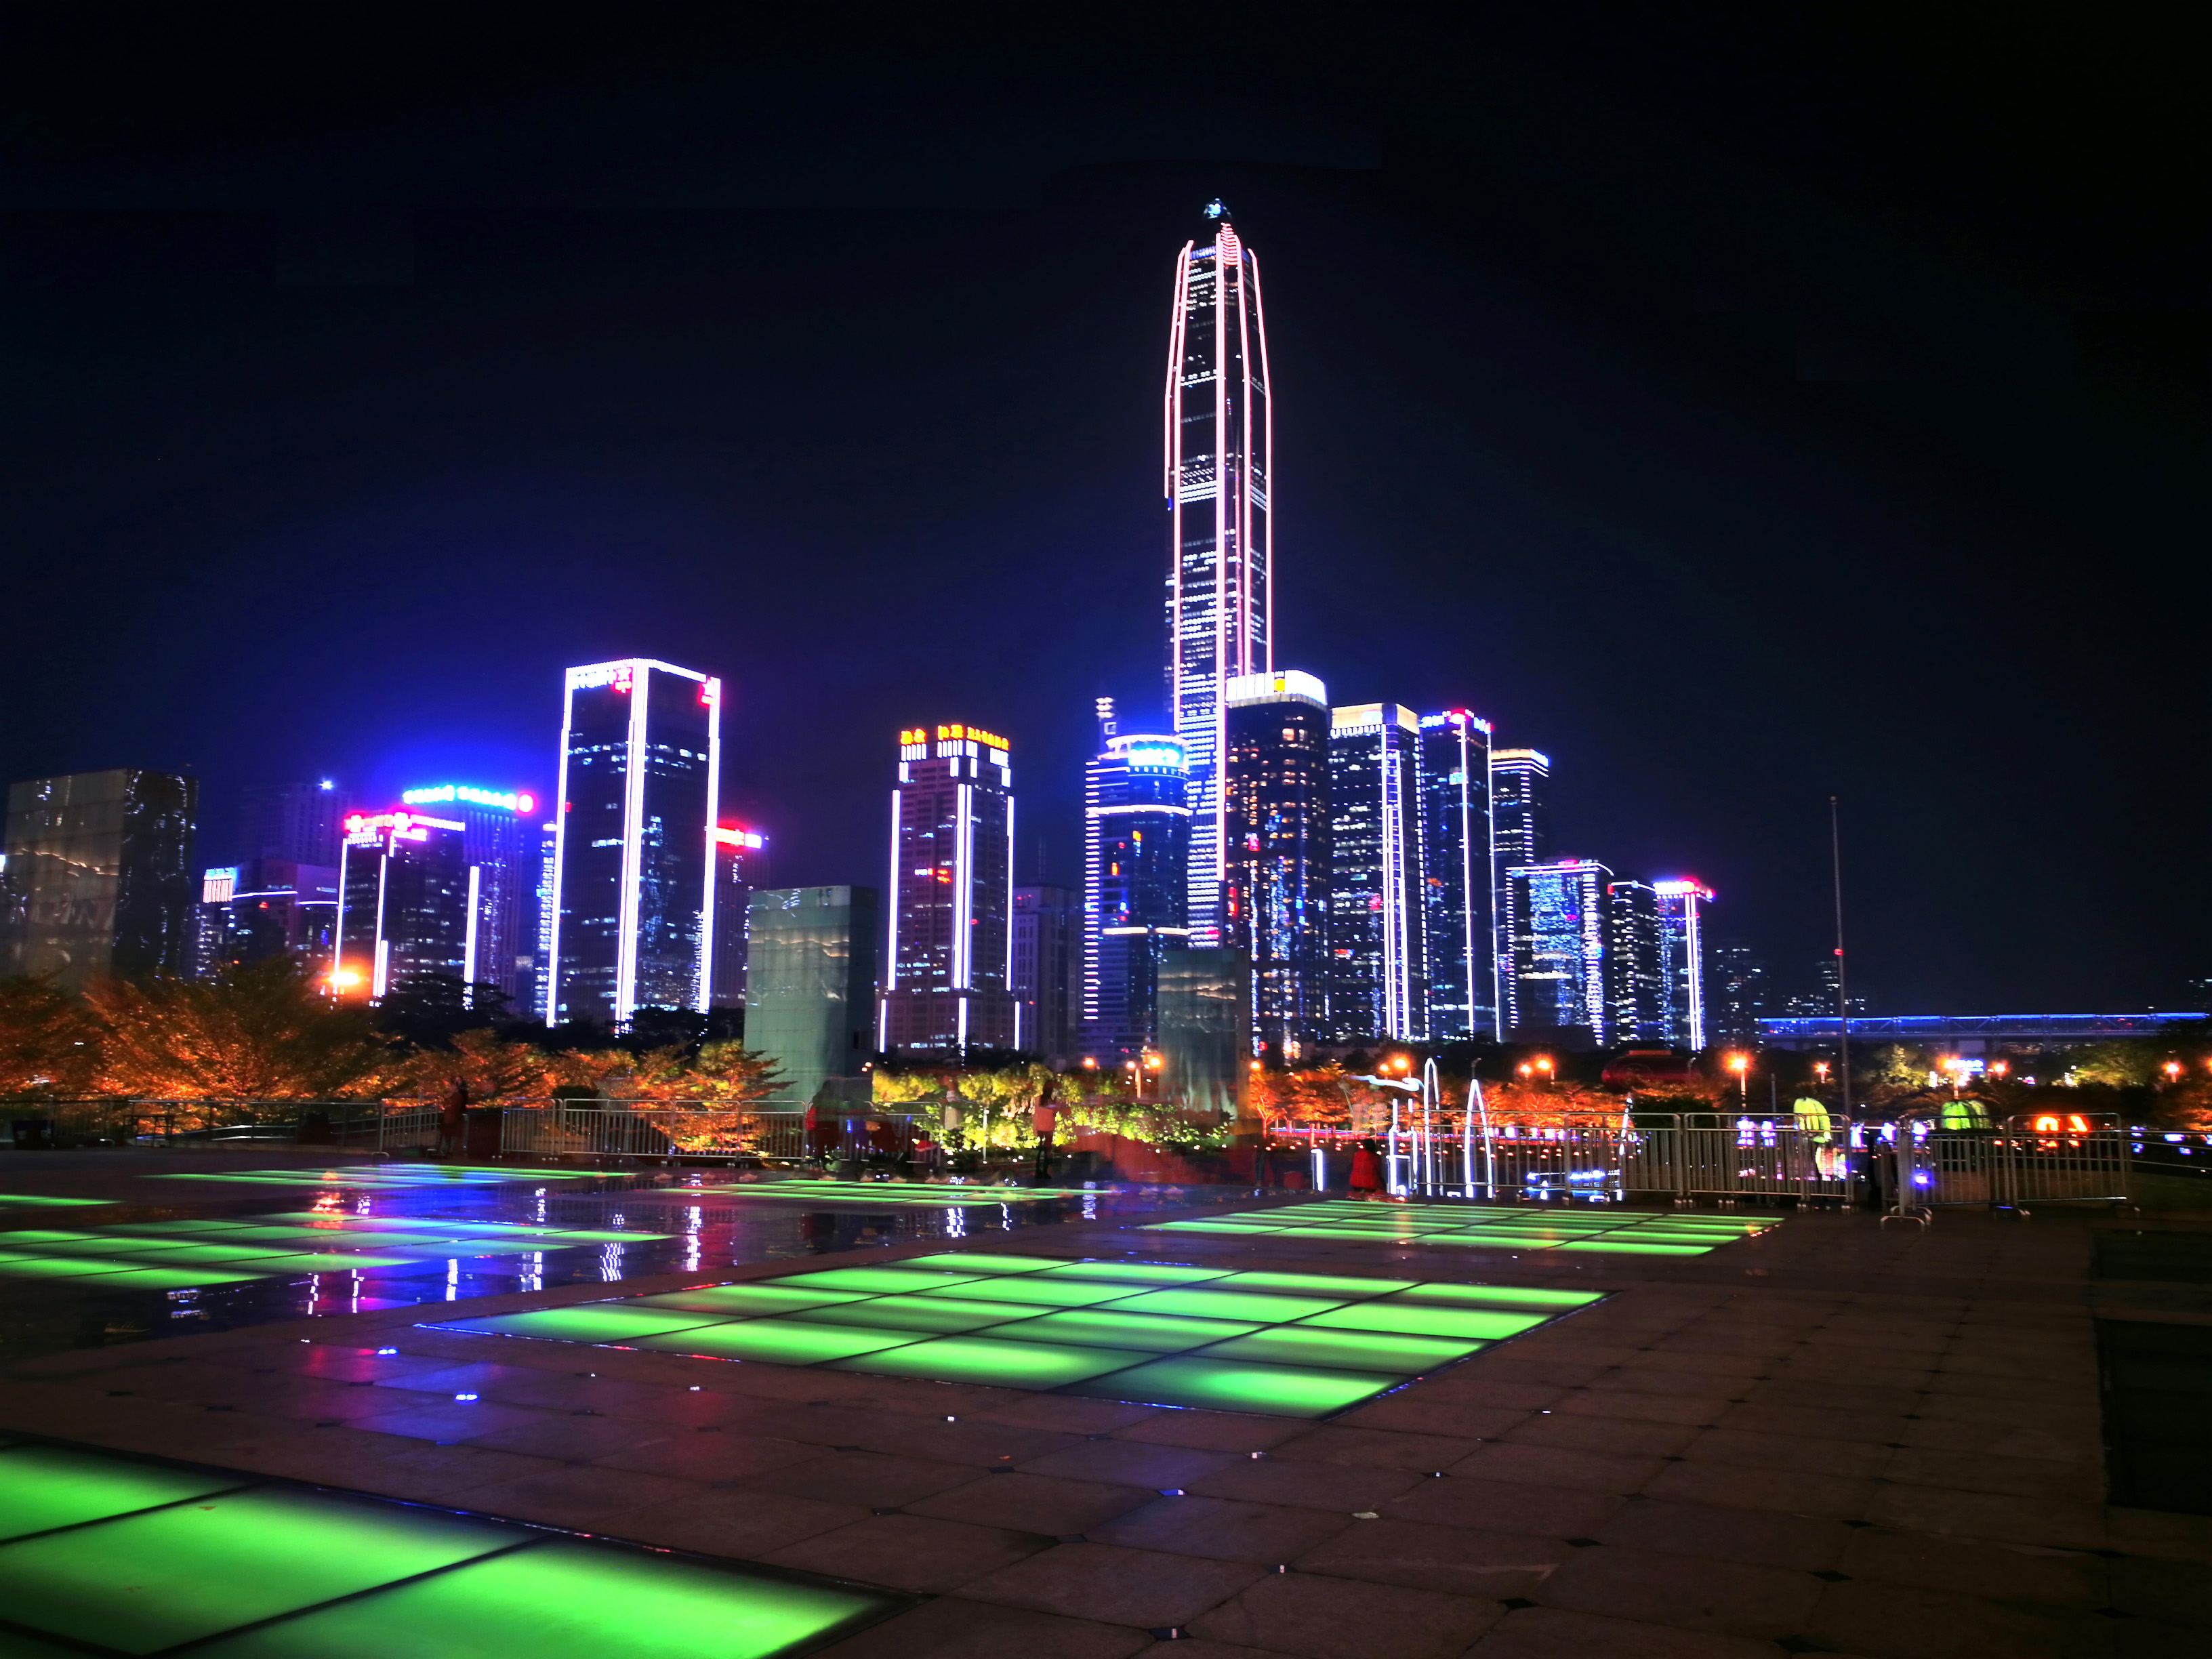 深圳市民广场夜景绚丽多彩美极了